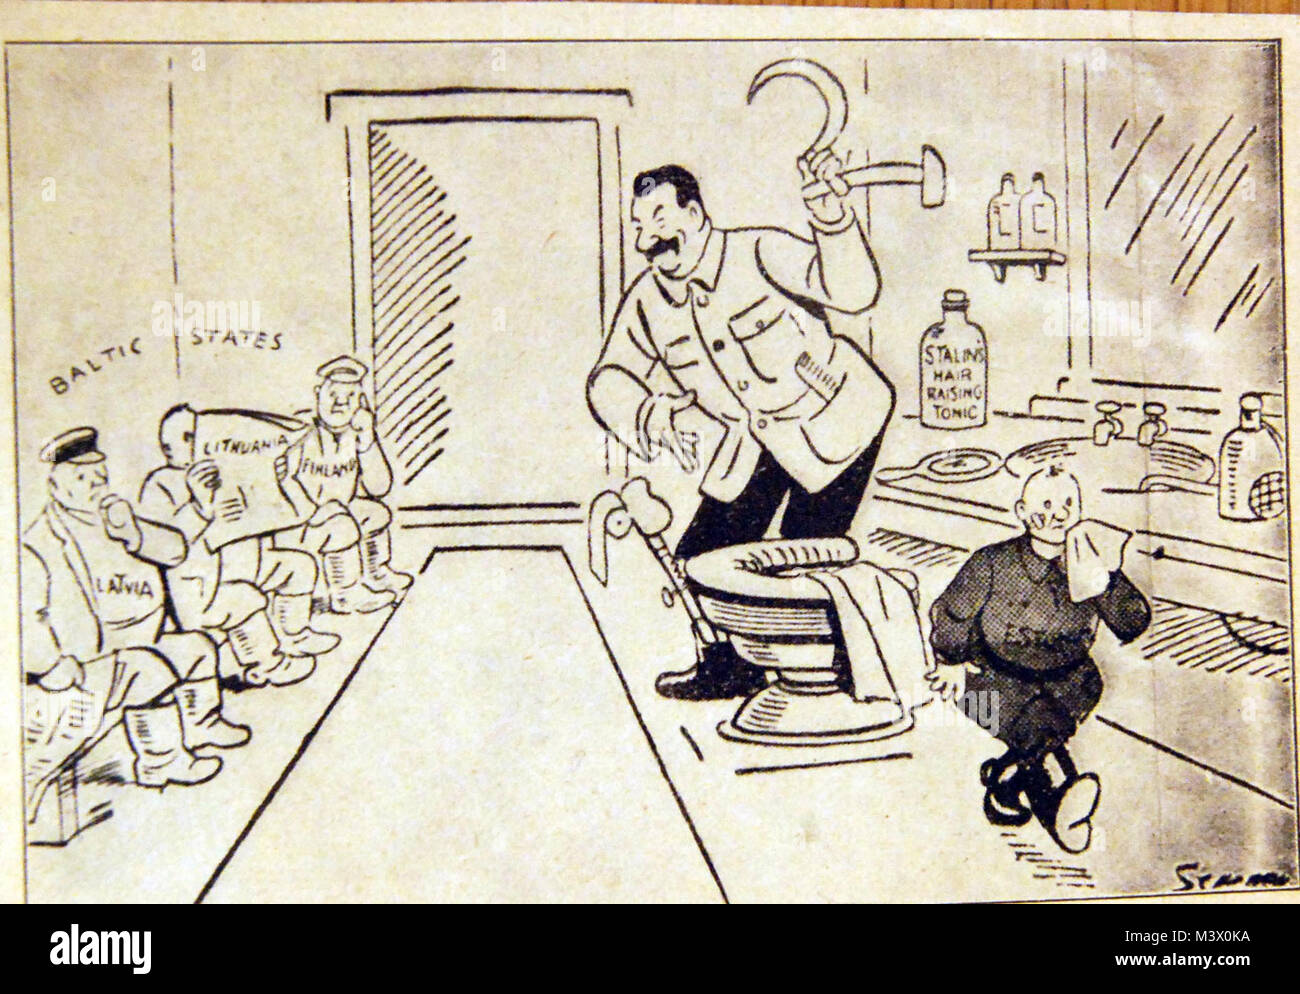 Lotto-3564-2: durante la seconda guerra mondiale. Mostra del fumetto Russo  leader Josef Stalin testa verso gli Stati del Baltico con un "falce e  martello". La cortesia della Biblioteca del Congresso. (2018/02/02).  Lotto-3564-2